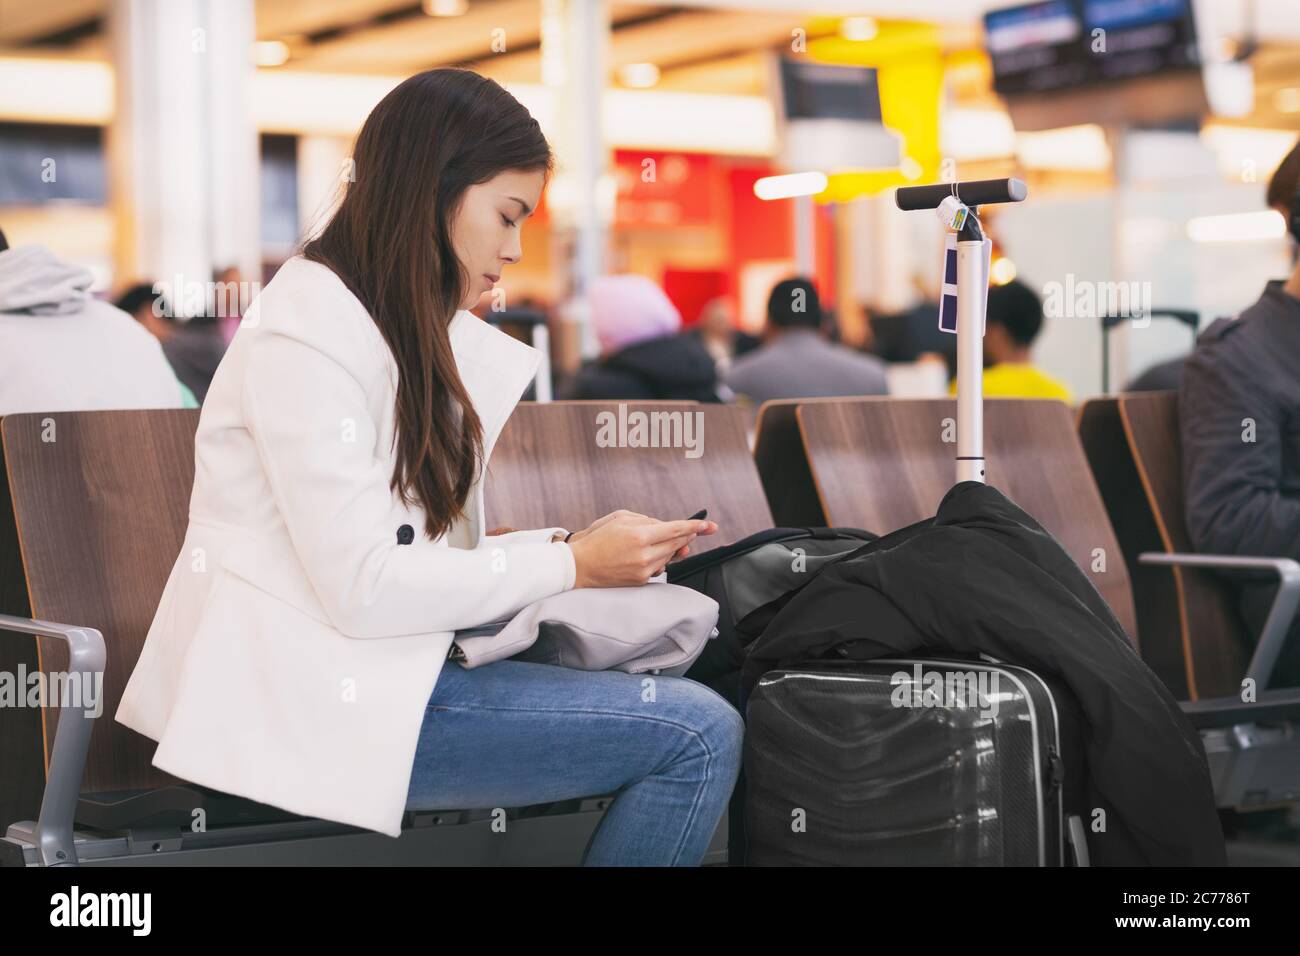 Die Flugpassagin auf dem Handy wartet auf einen verspäteten Flug und sitzt mit Gepäck am Terminal Gate. Gelangweilte und müde Person Stockfoto